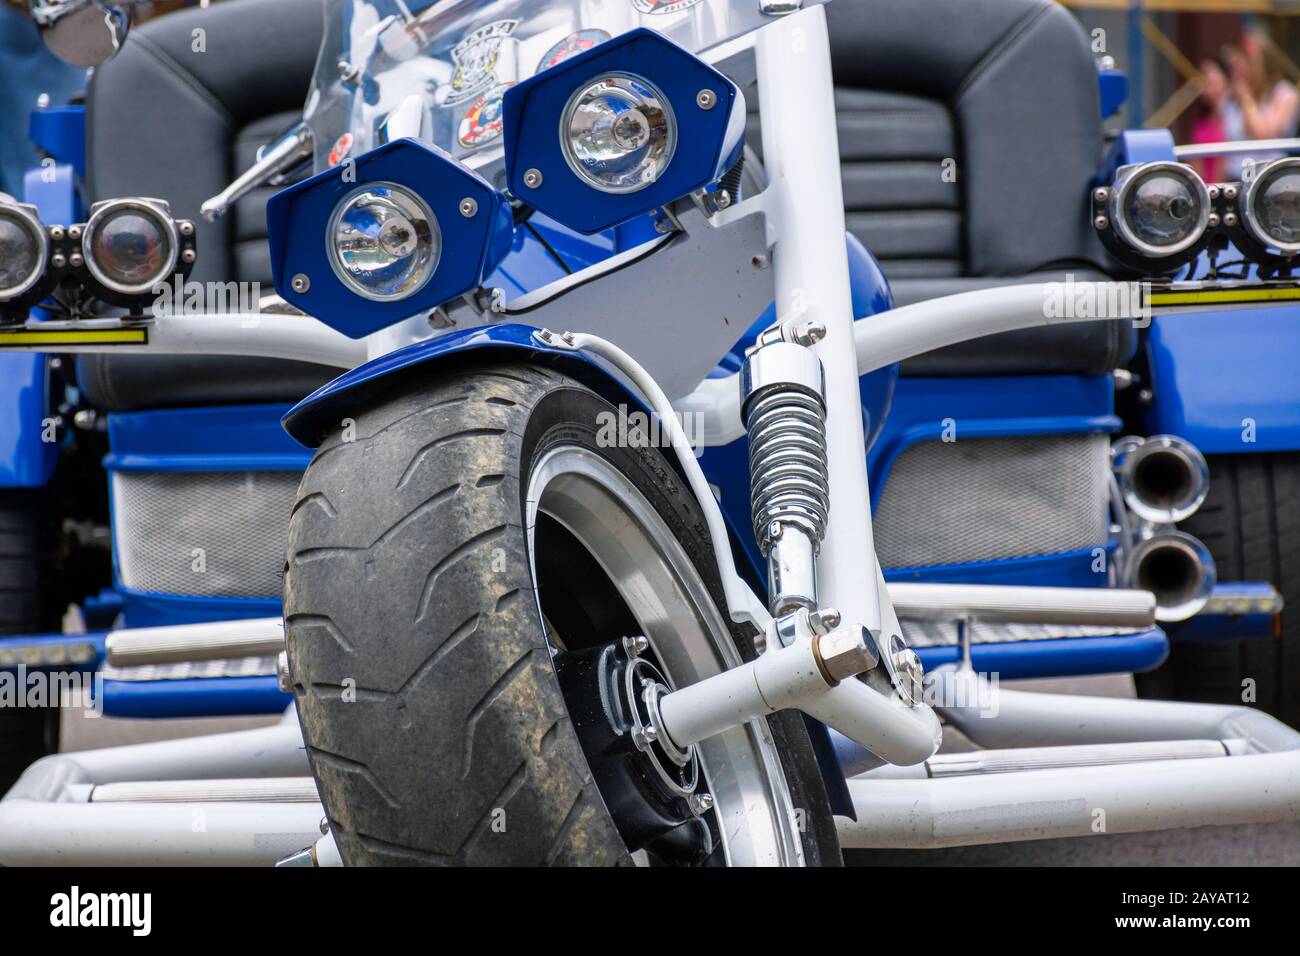 Uzhgorod, Ukraine - Jul 09, 2016: SilberR trike Detailaufnahmen. Schönes, maßgeschneidertes Dreirad Motorrad in blauer Farbe Stockfoto